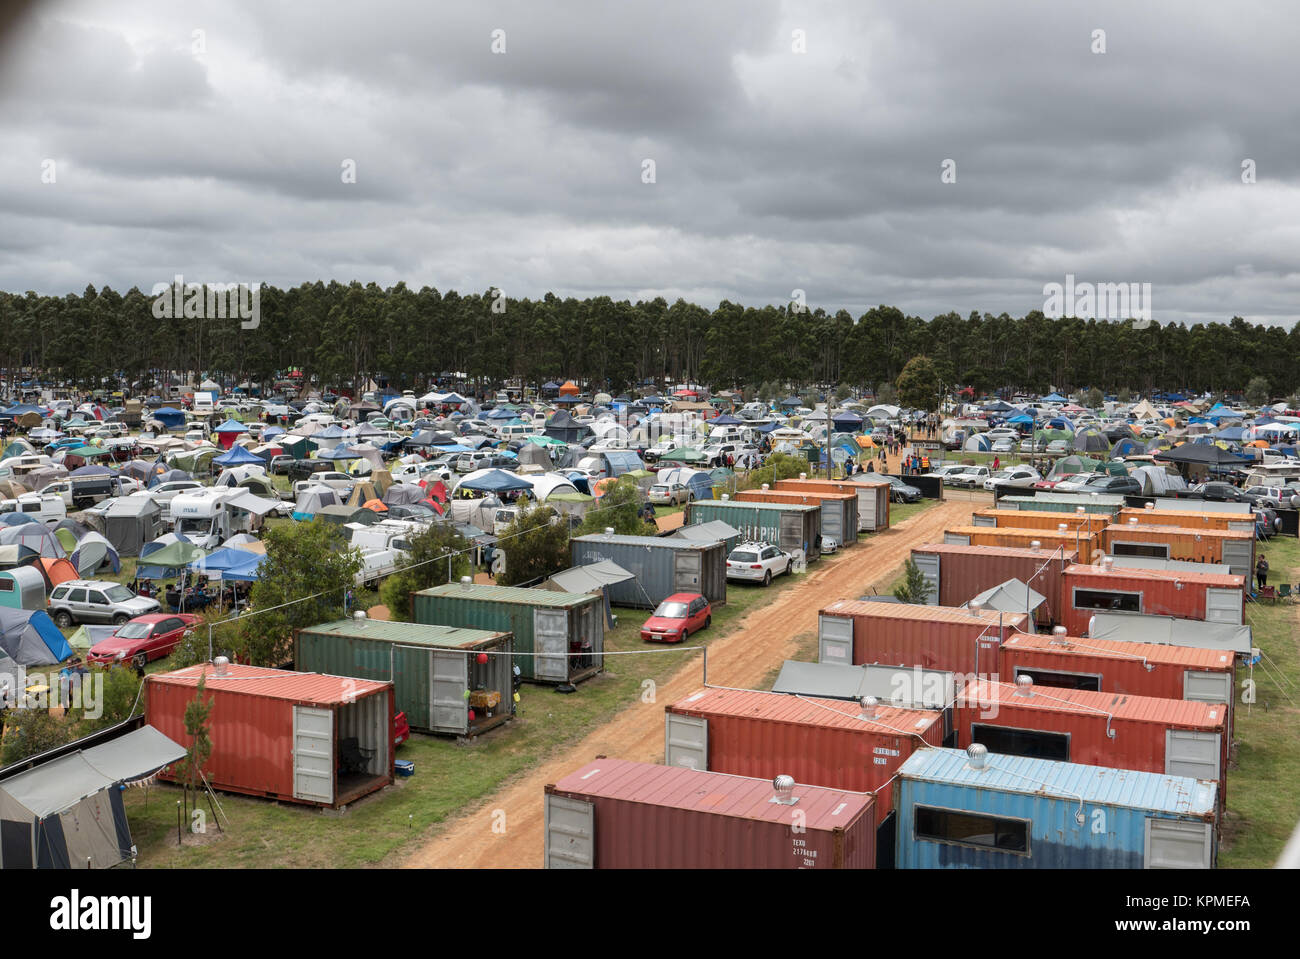 Luftaufnahme von sehr großen Music Festival Campingplatz mit Shipping Container unterkunft Zelte, Anhänger, Autos und Wald im Abstand. Stockfoto